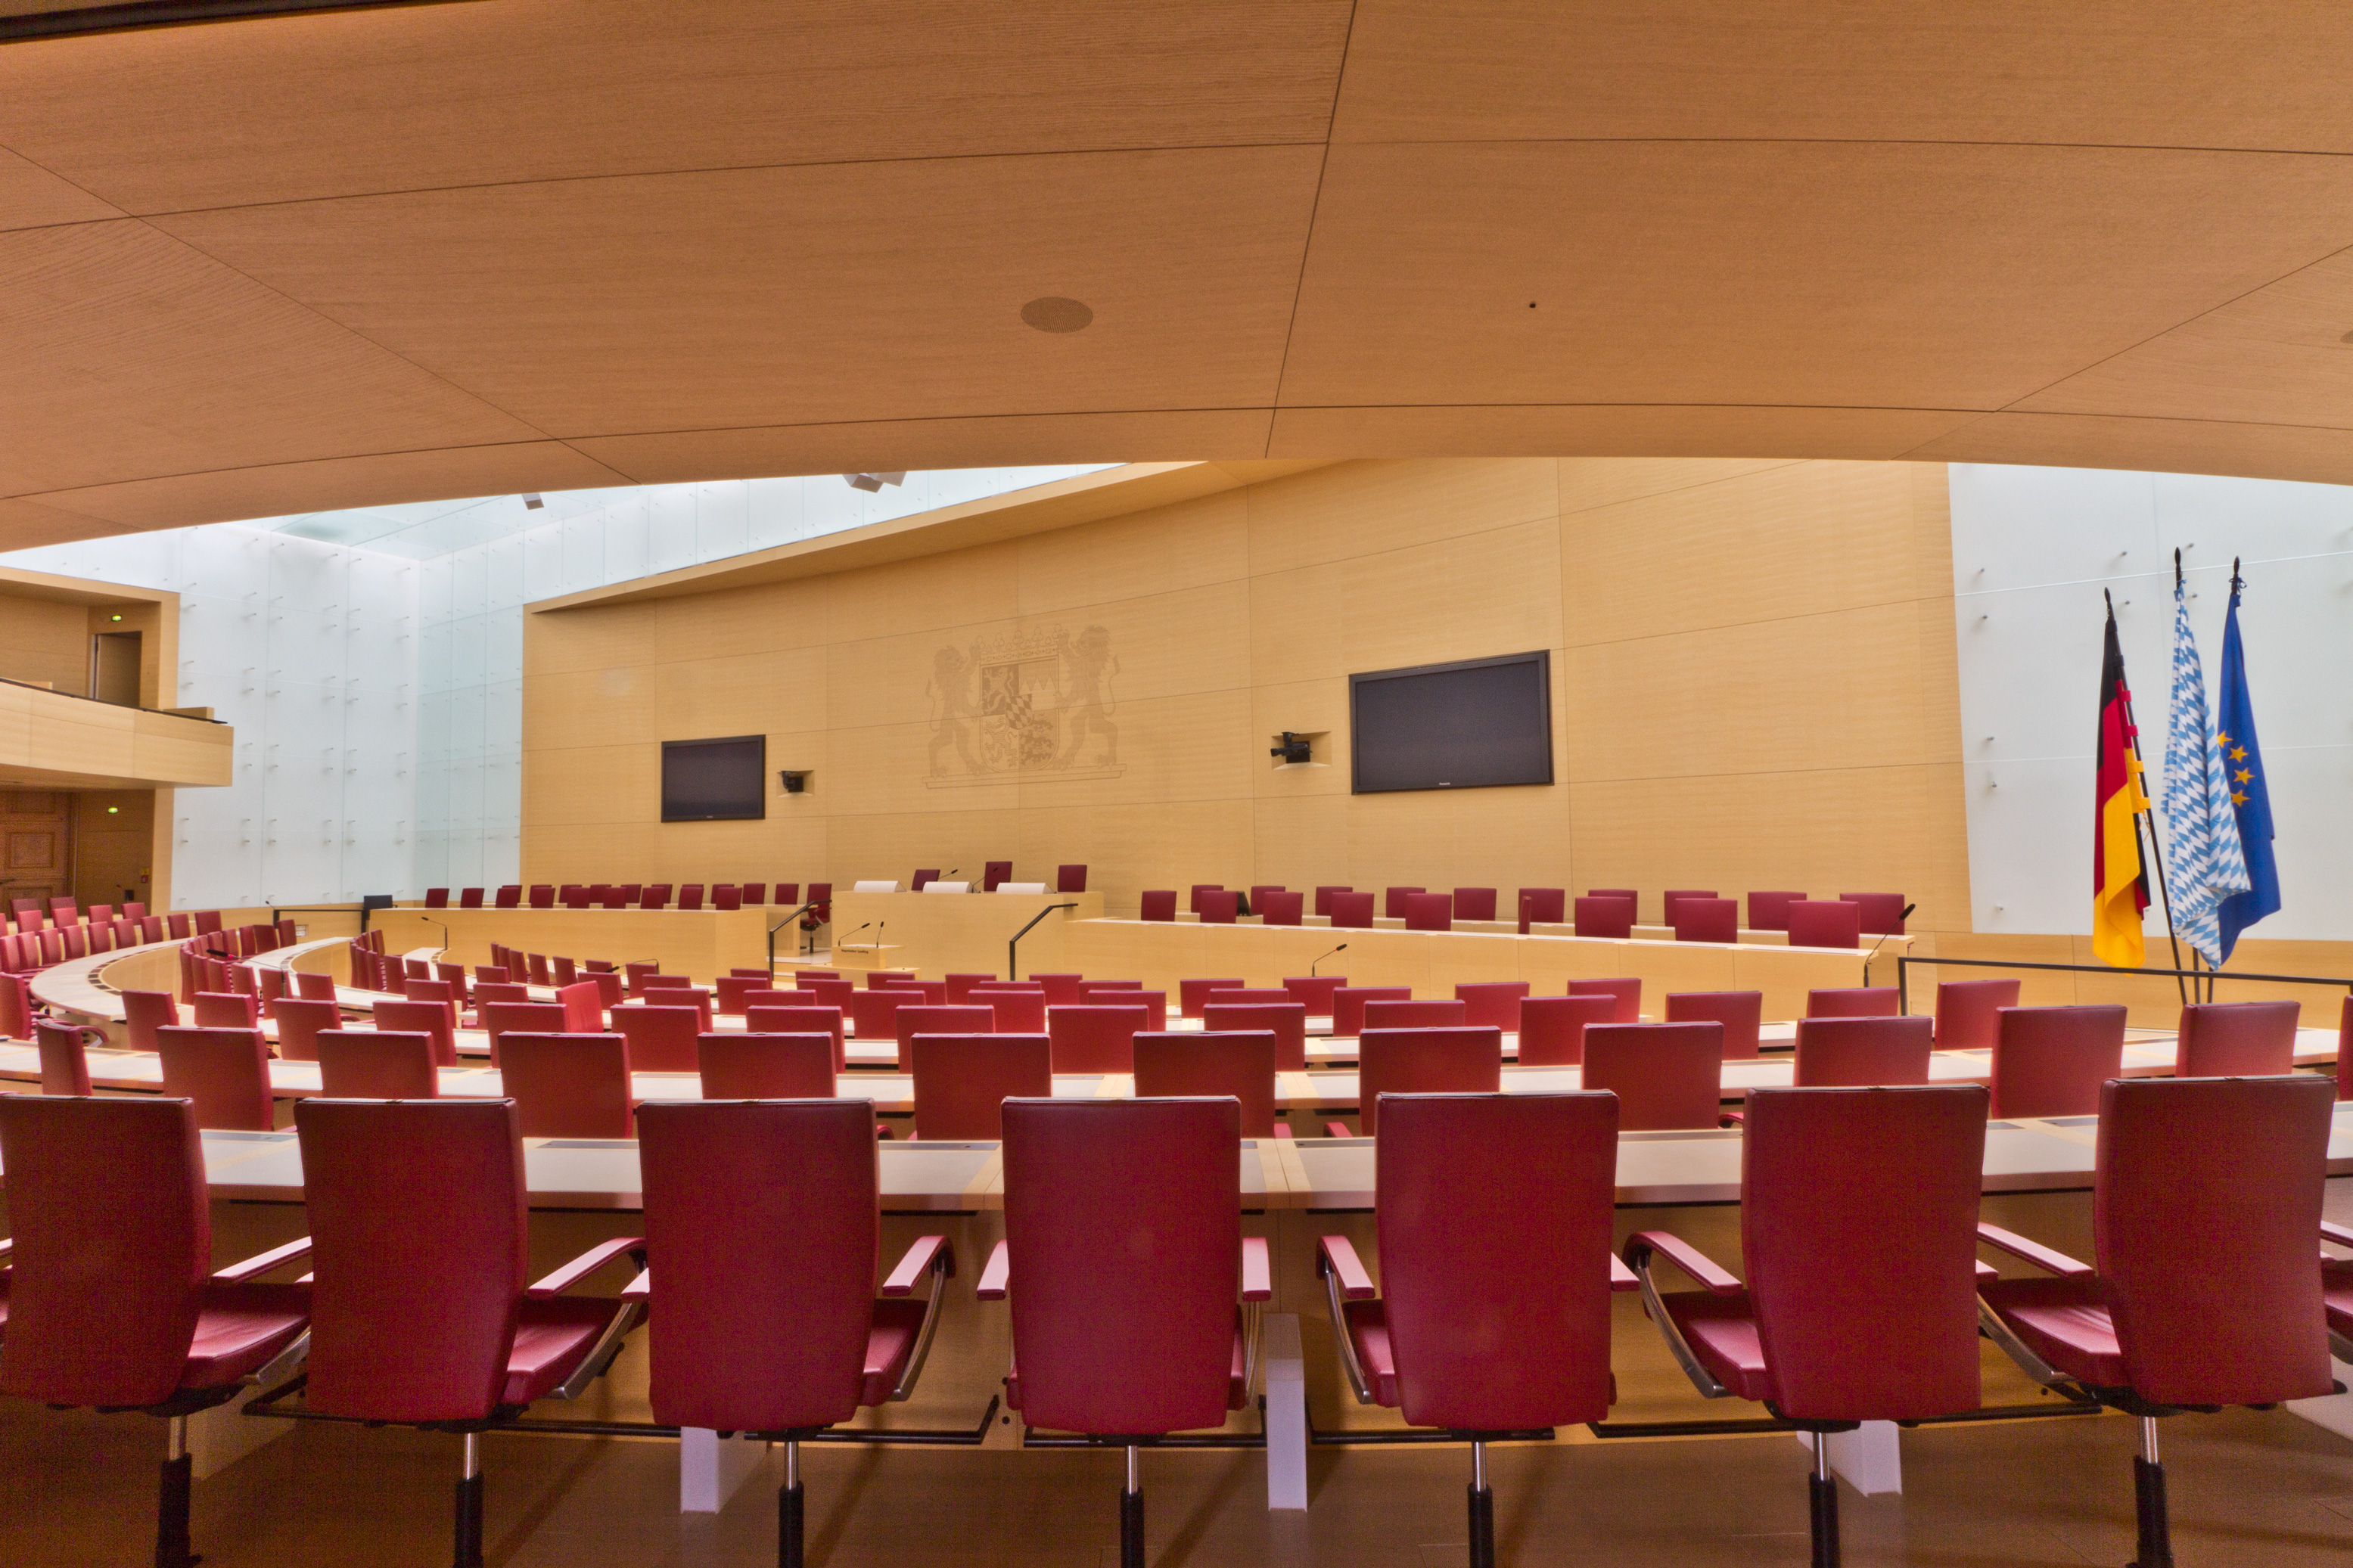 2012-07-17 - Bayerischer Landtag - Plenarsaal - 6902